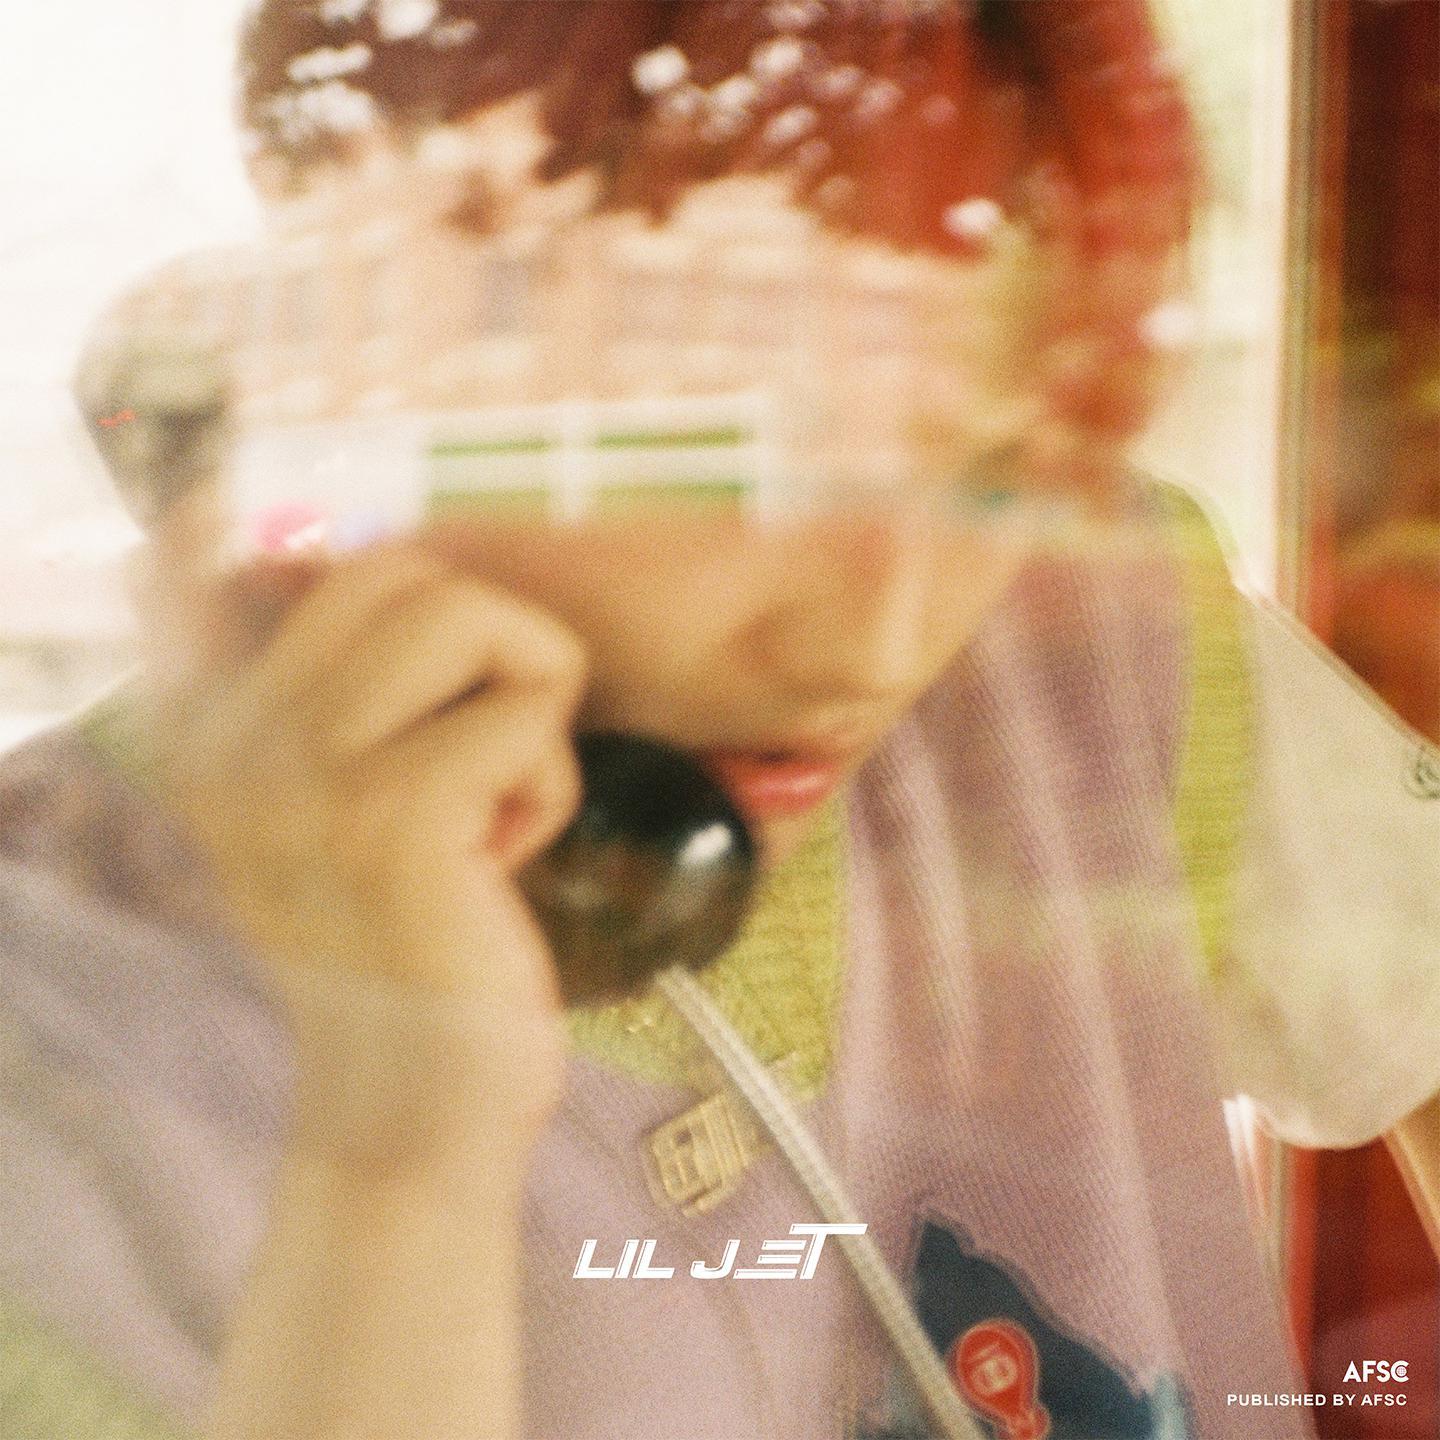 无语歌词 歌手Lil Jet-专辑六秒夏日-单曲《无语》LRC歌词下载